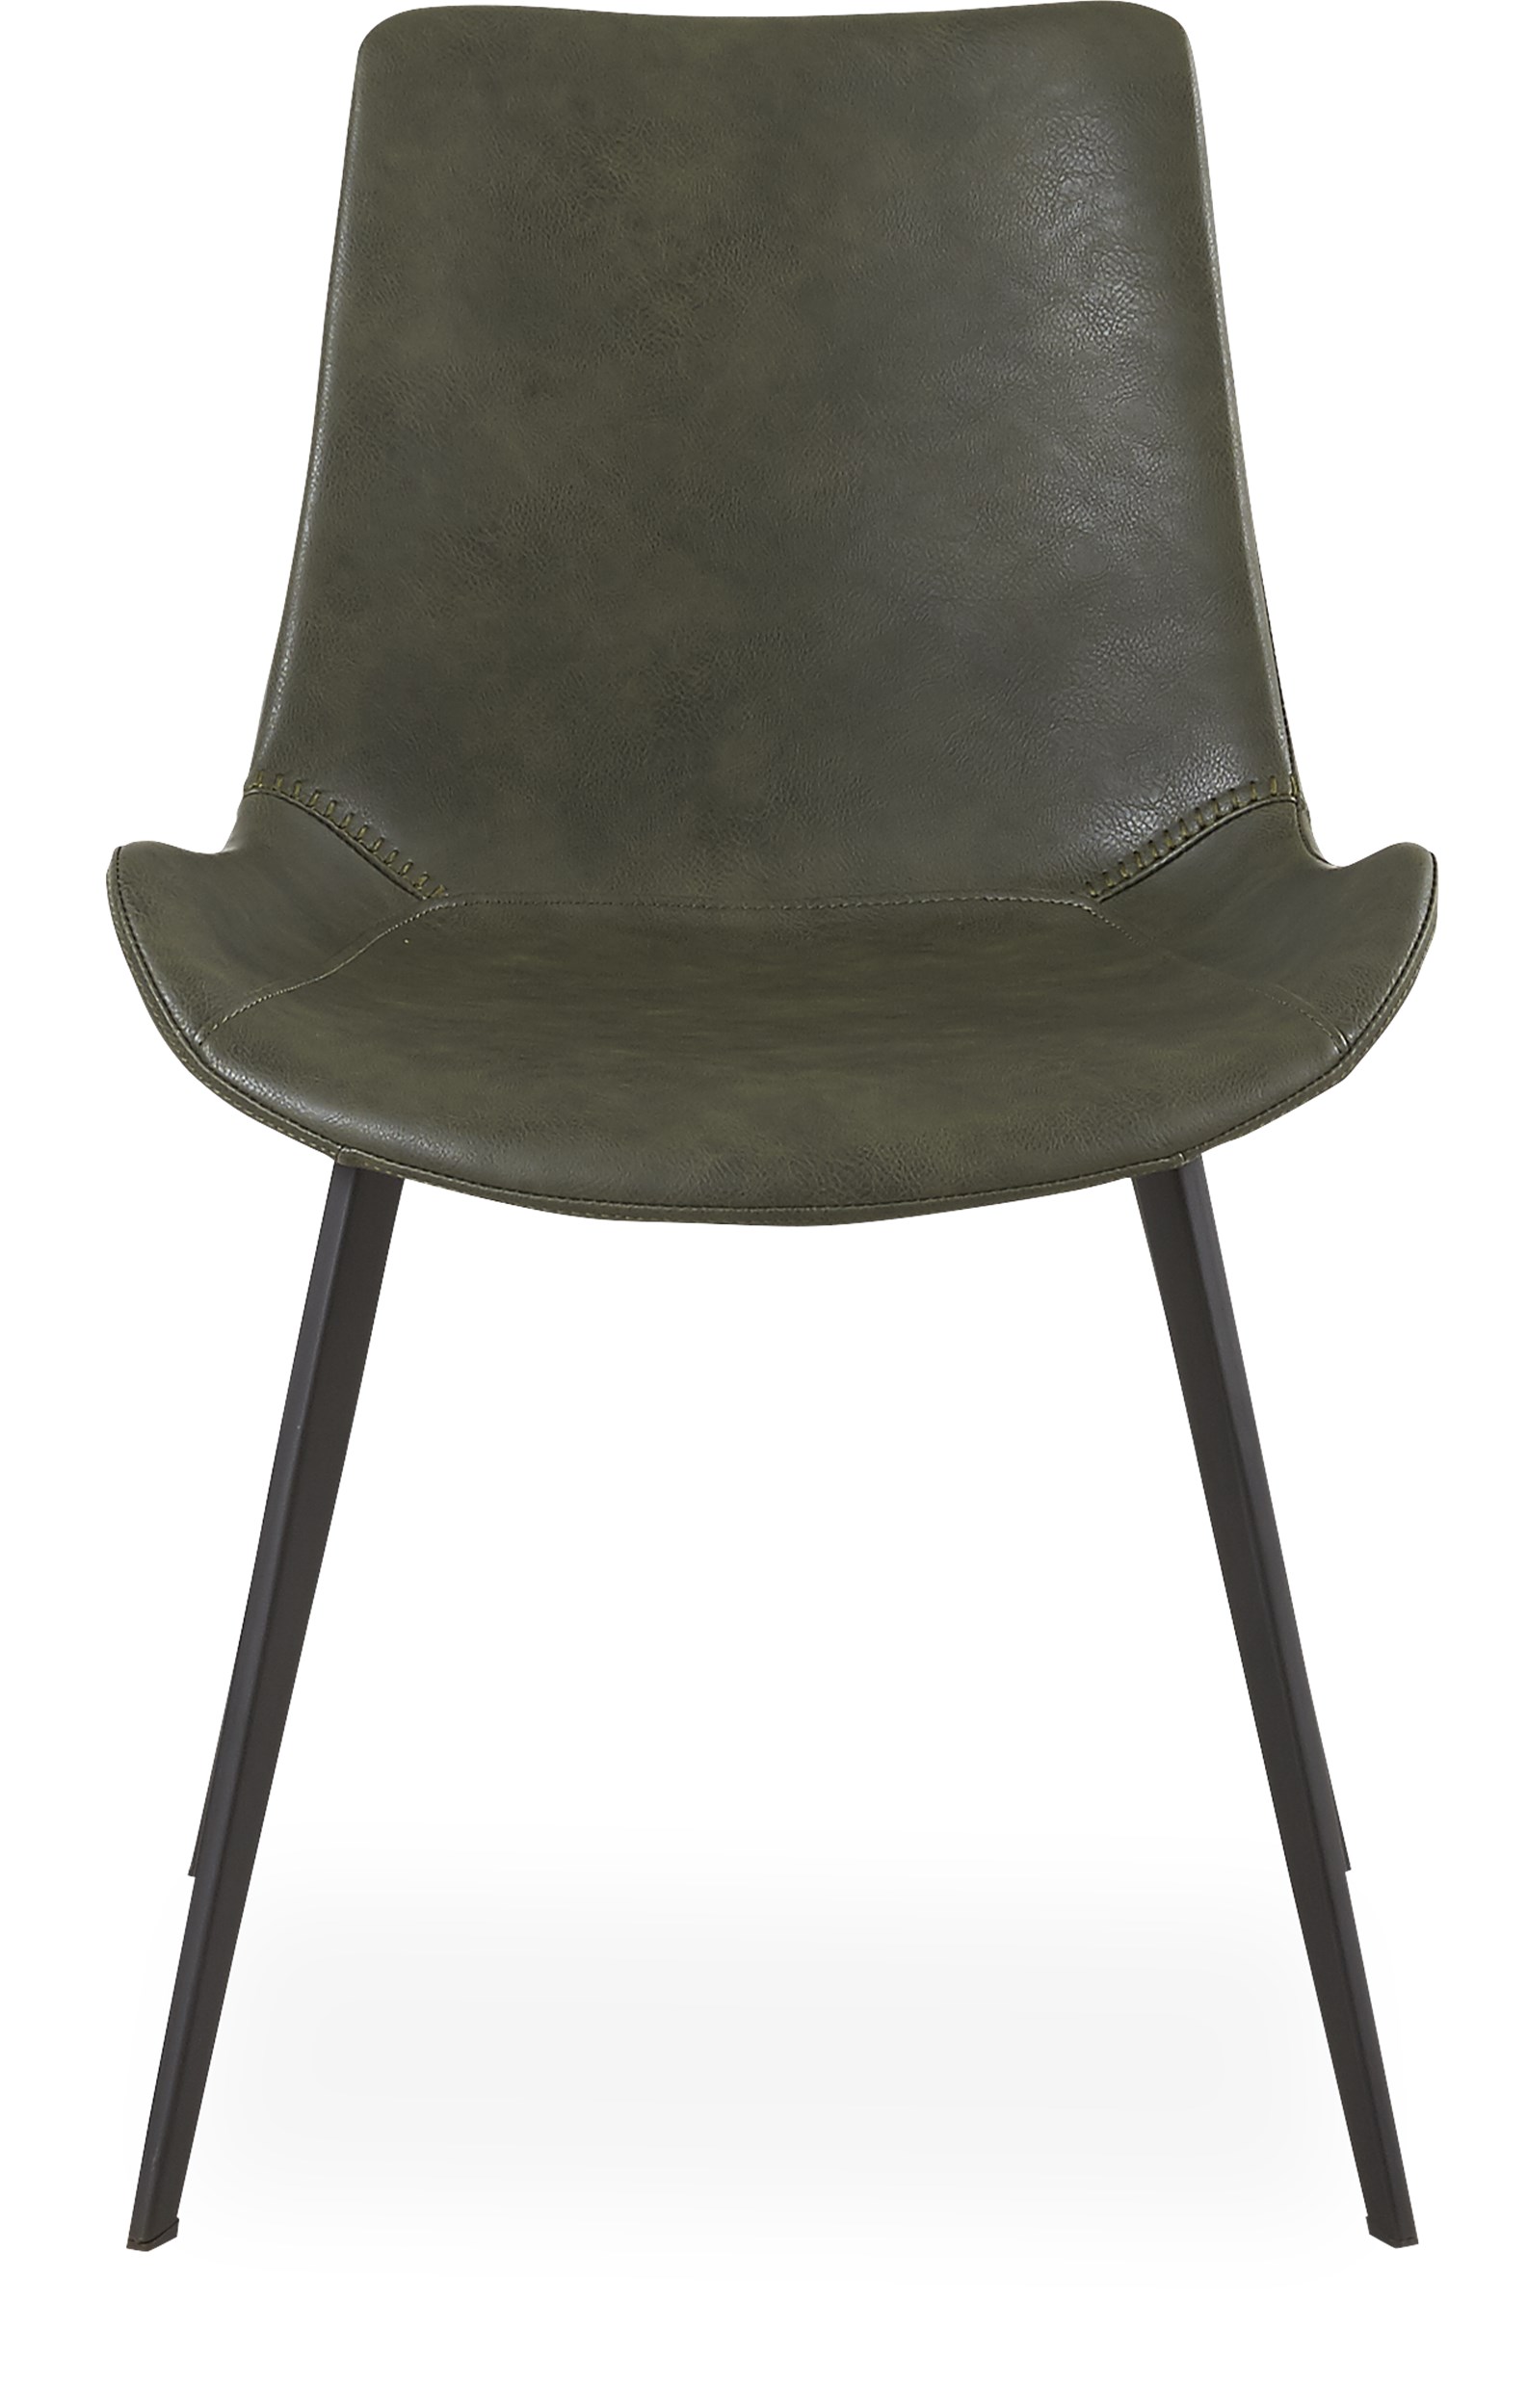 Hype Spisebordsstol - Sæde i Vintage grøn kunstlæder og ben i sortlakeret metal